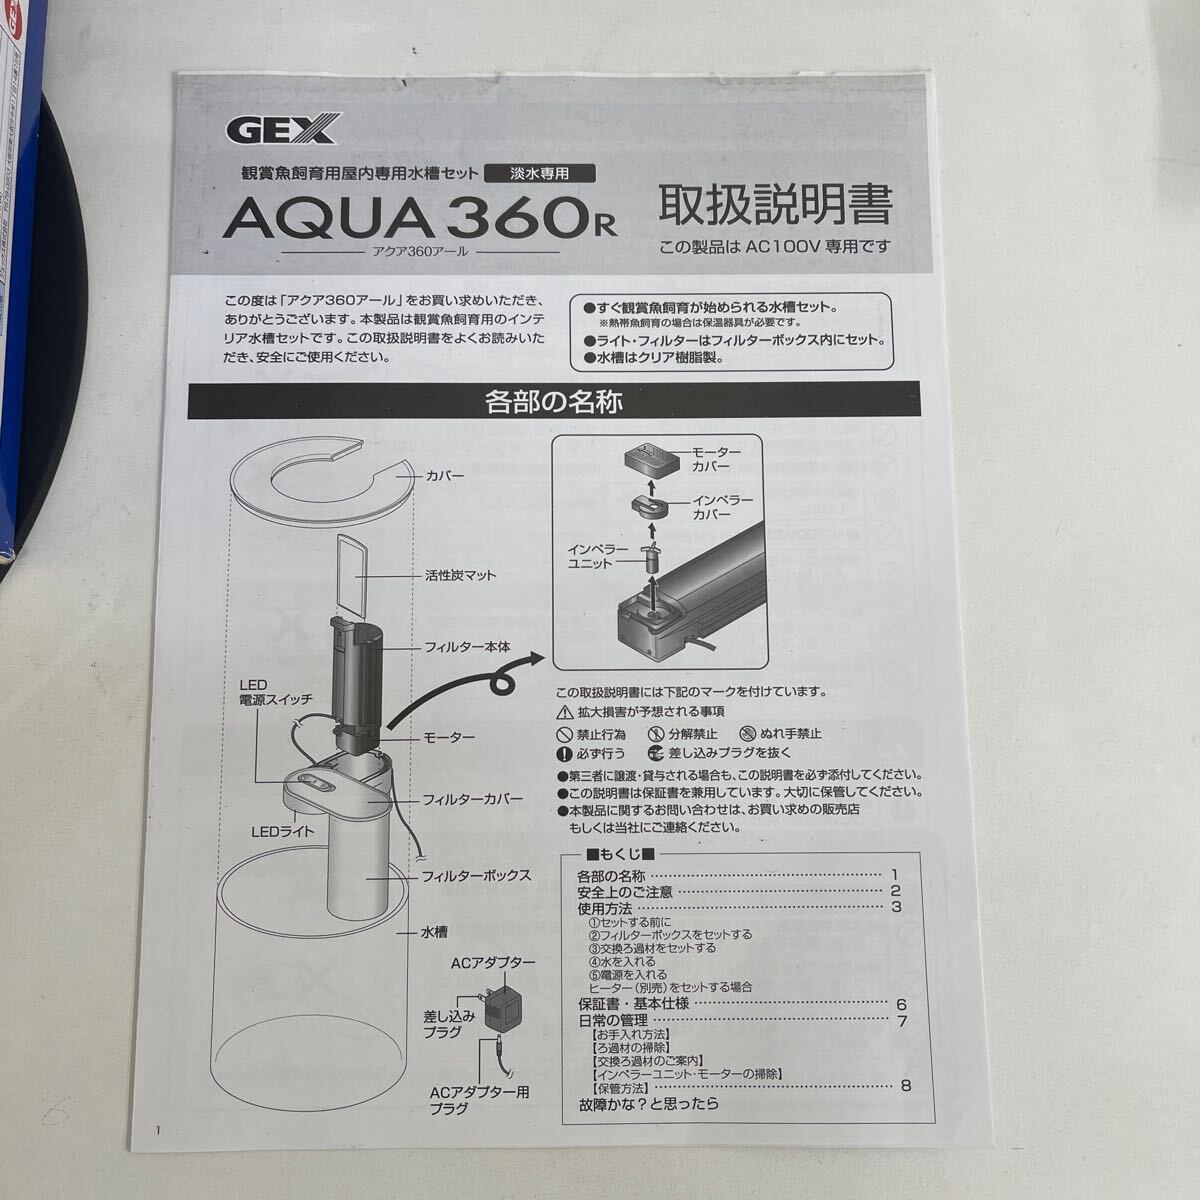 Y317. 5. 未使用品 GEX AQUA 360R ジェックス アクア 360R インテリア水槽 オールインワン水槽. 保管品の為動作確認し、確認OK の画像2